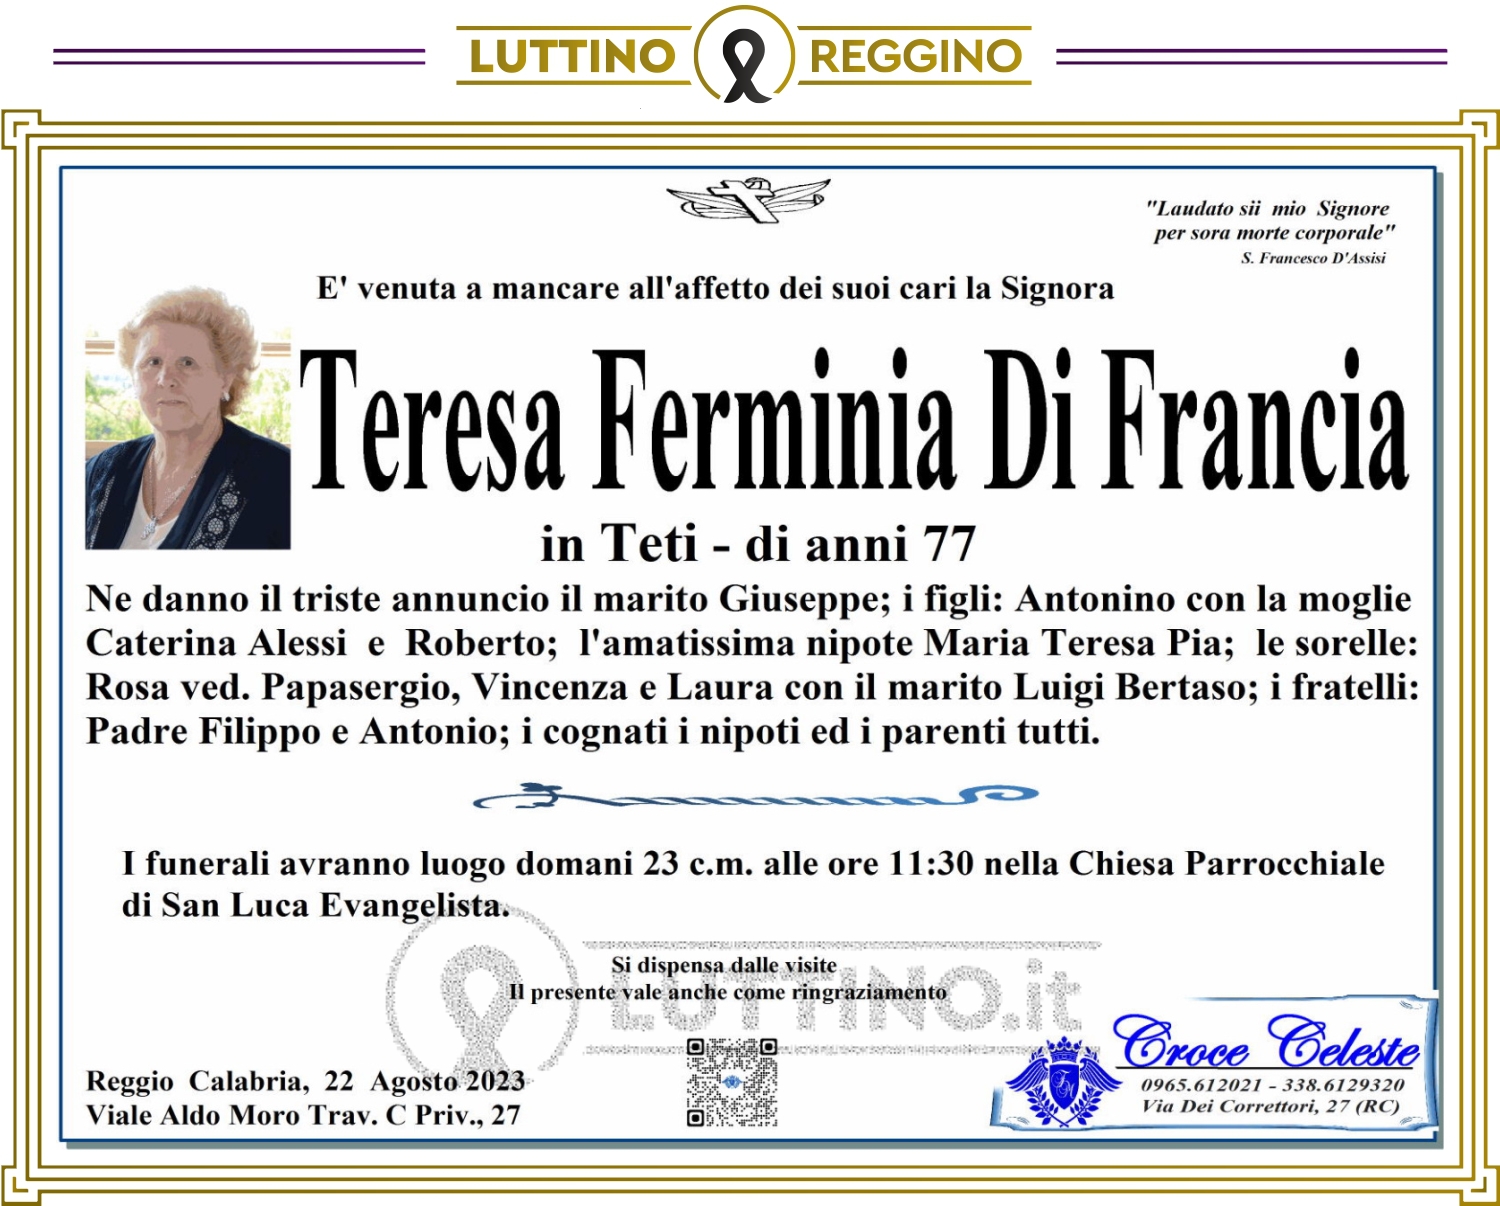 Teresa Ferminia Di Francia